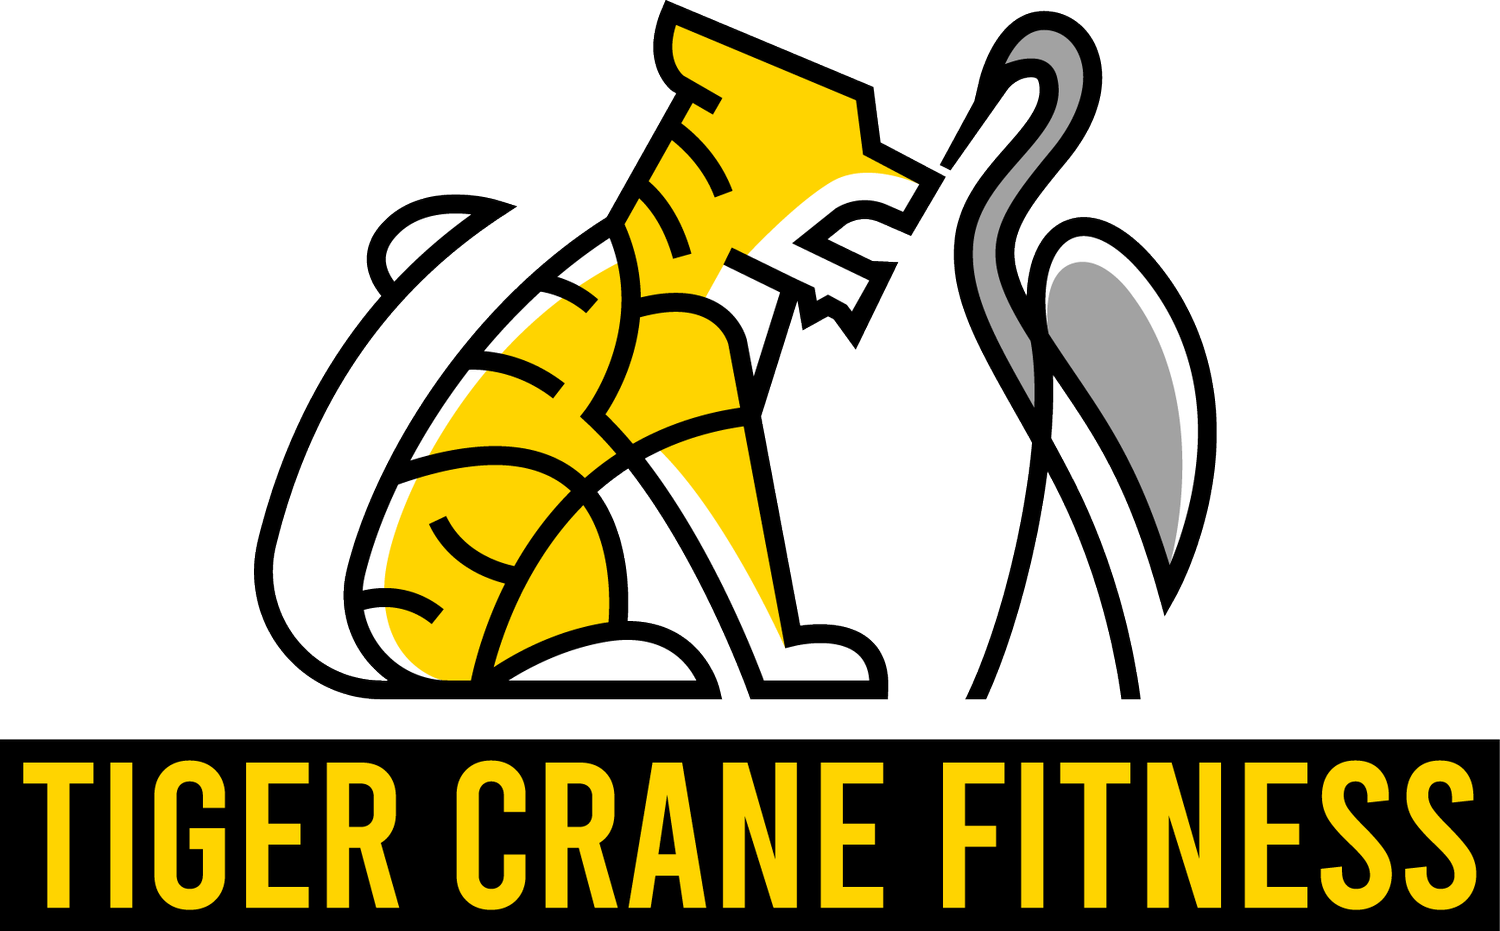 Tiger Crane Martial Arts and Fitness